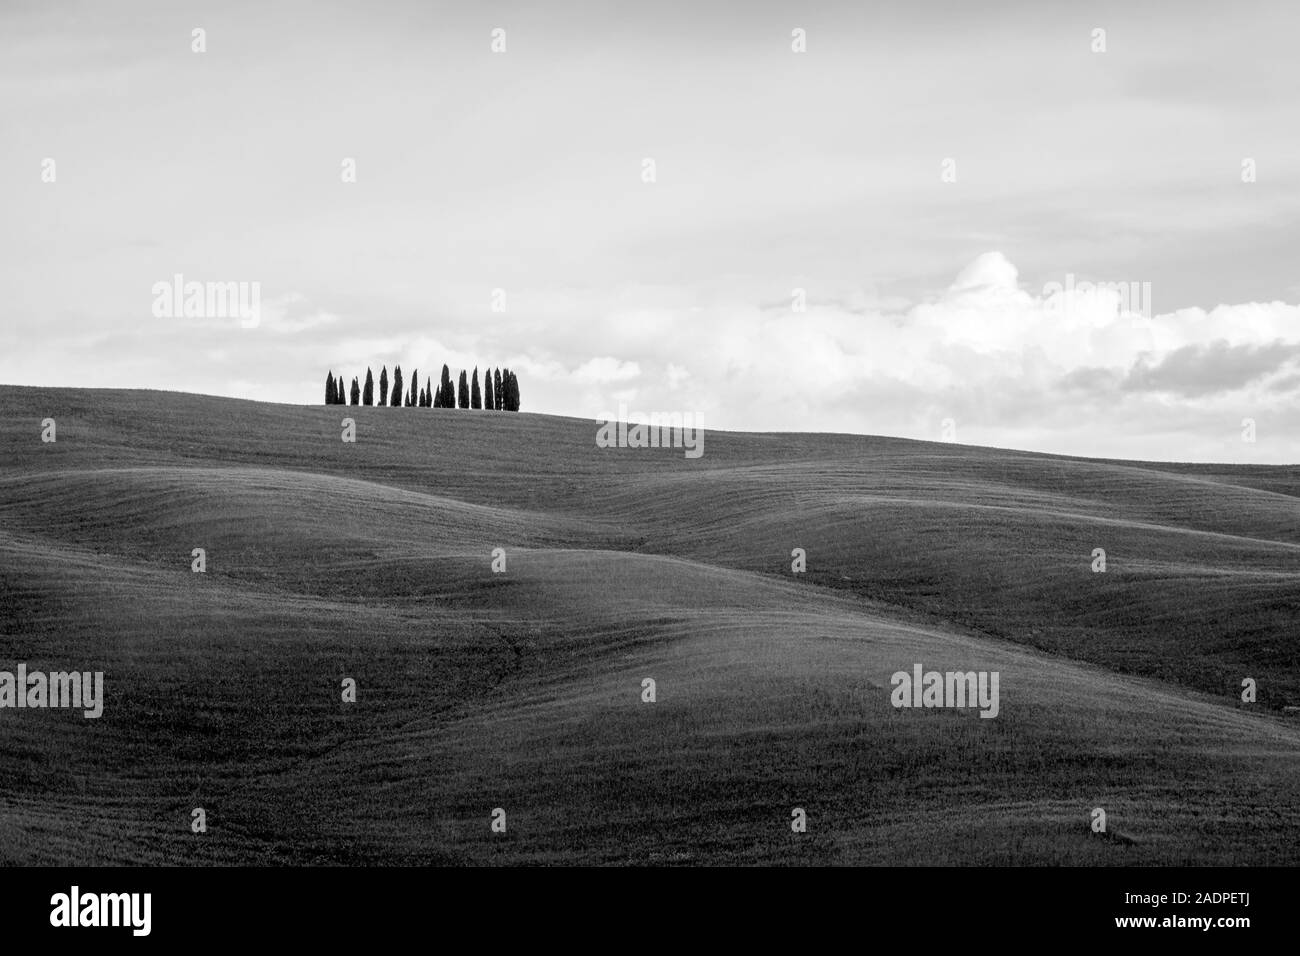 Il paesaggio toscano, dolci colline con campi di grano e cipressi, nei pressi di San Quirico d'Orcia, Val d'Orcia, Toscana, Italia, Europa. Foto Stock